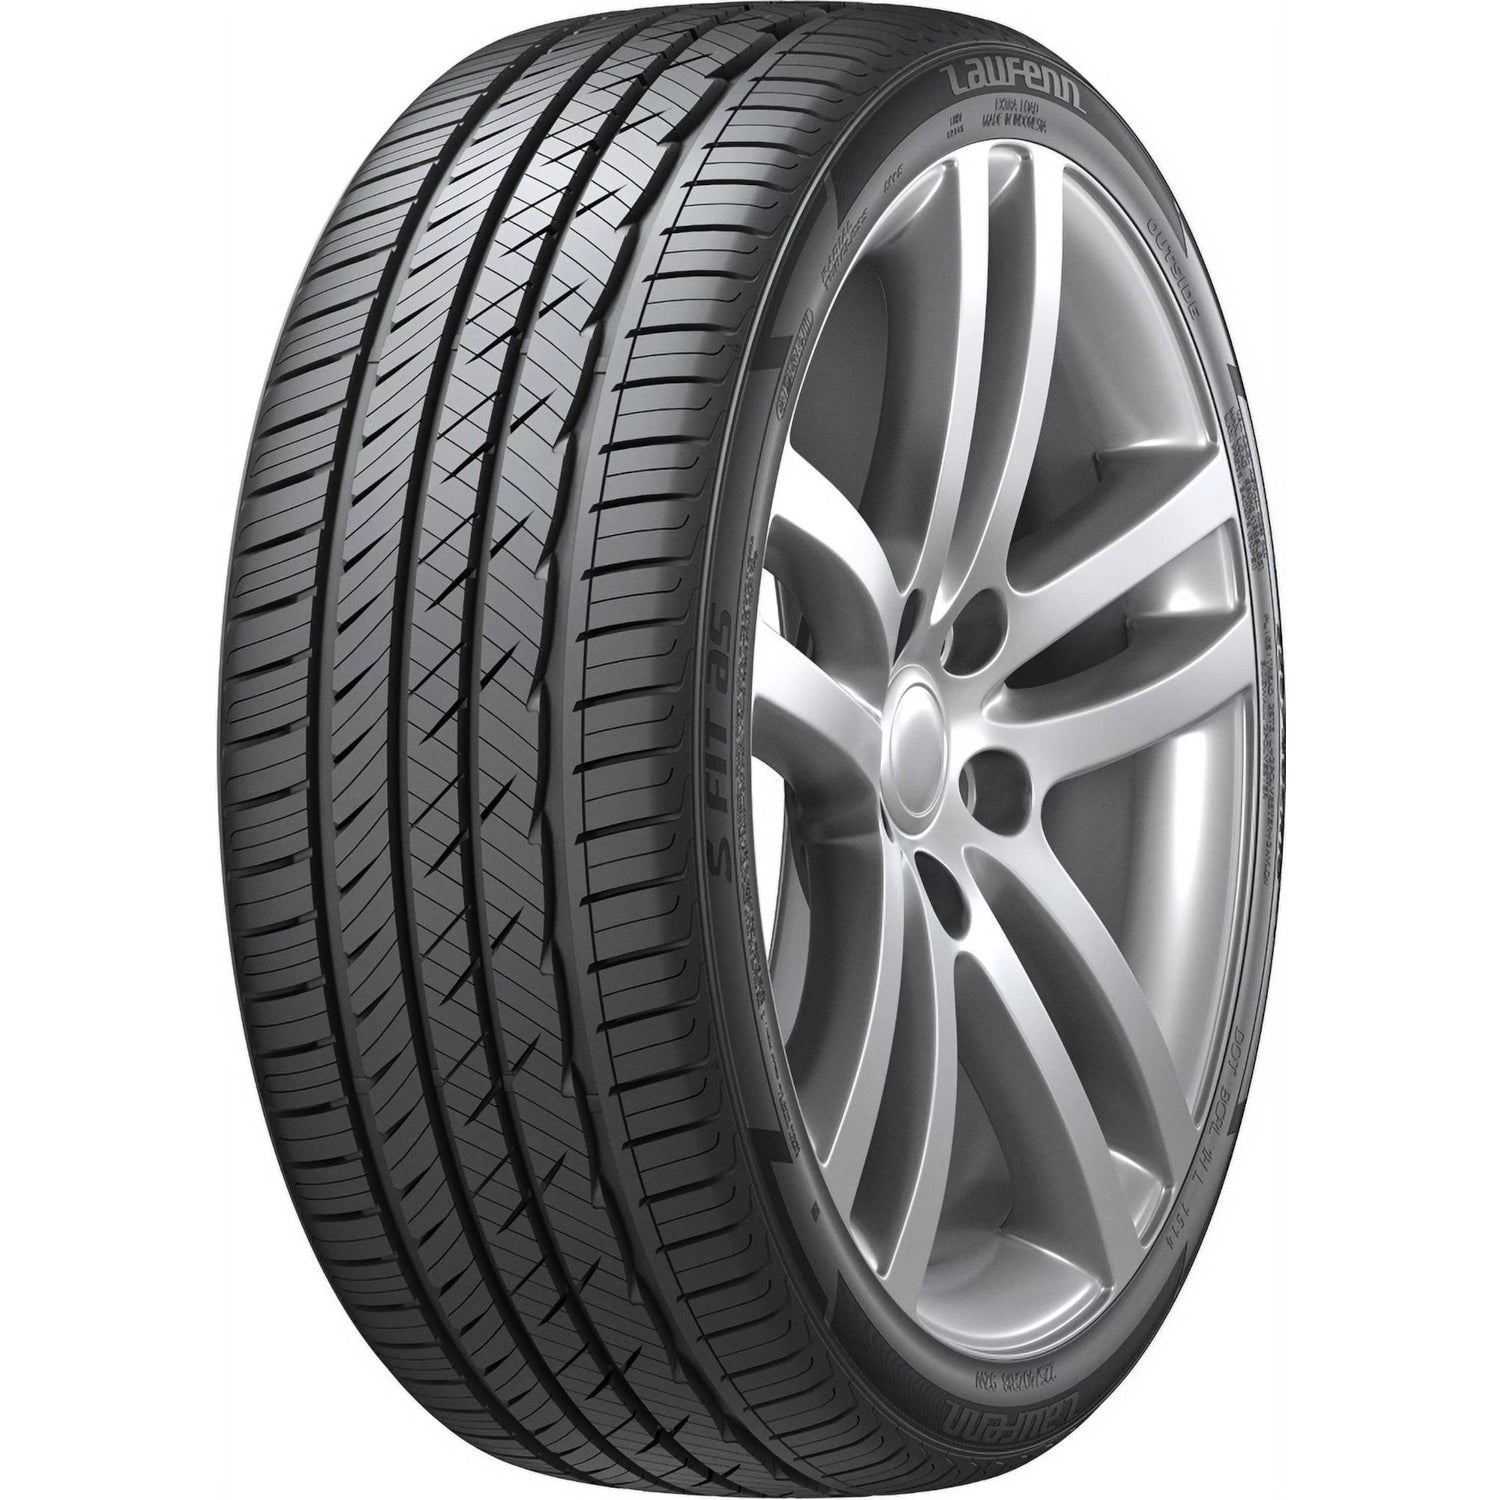 LAUFENN S FIT AS 235/55ZR17 (27.2X9.3R 17) Tires